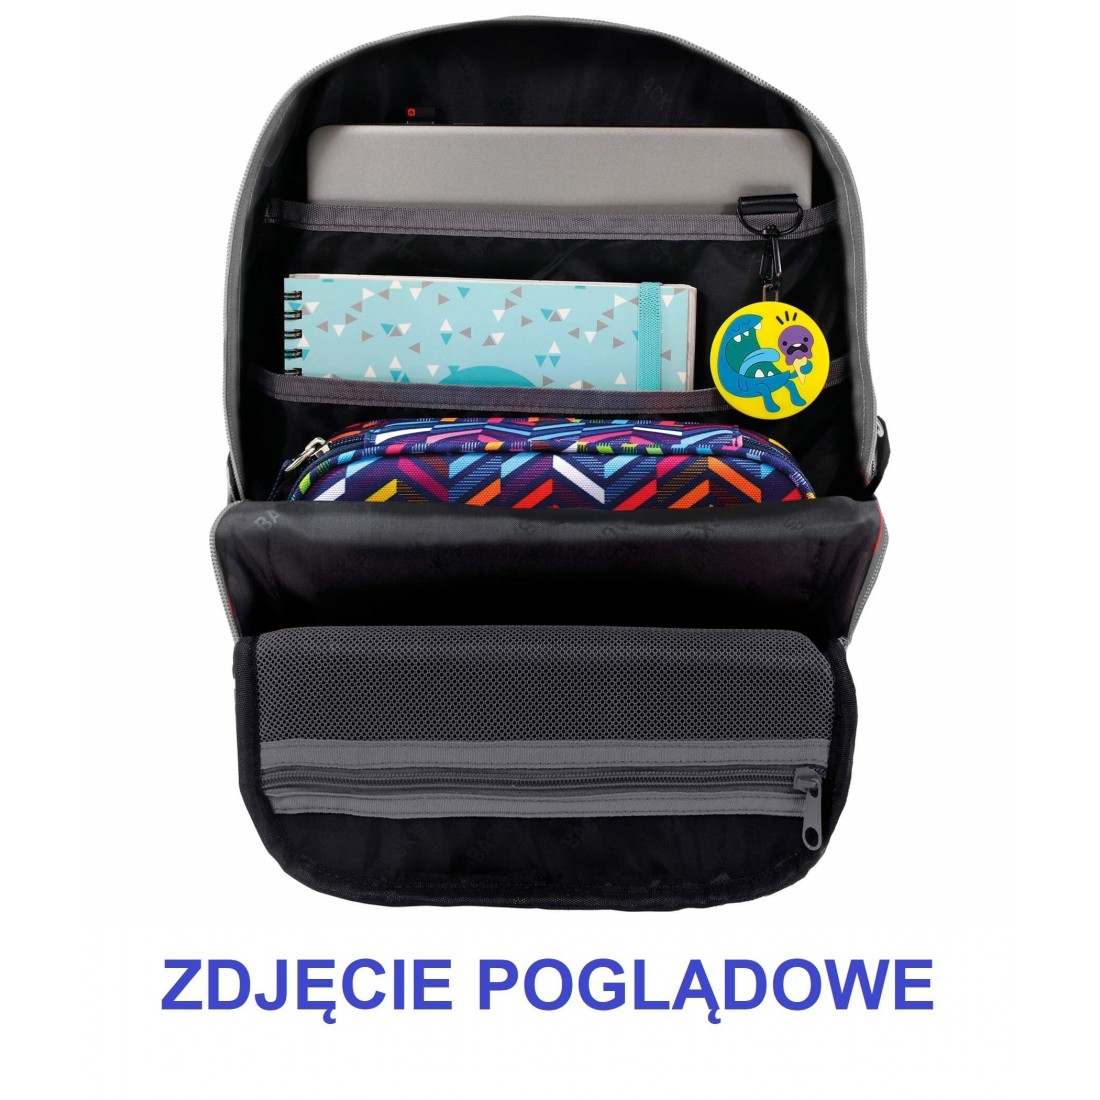 Plecak szkolny dla chłopca BackUP metal tłoczona blacha M42 - plecak-tornister.pl